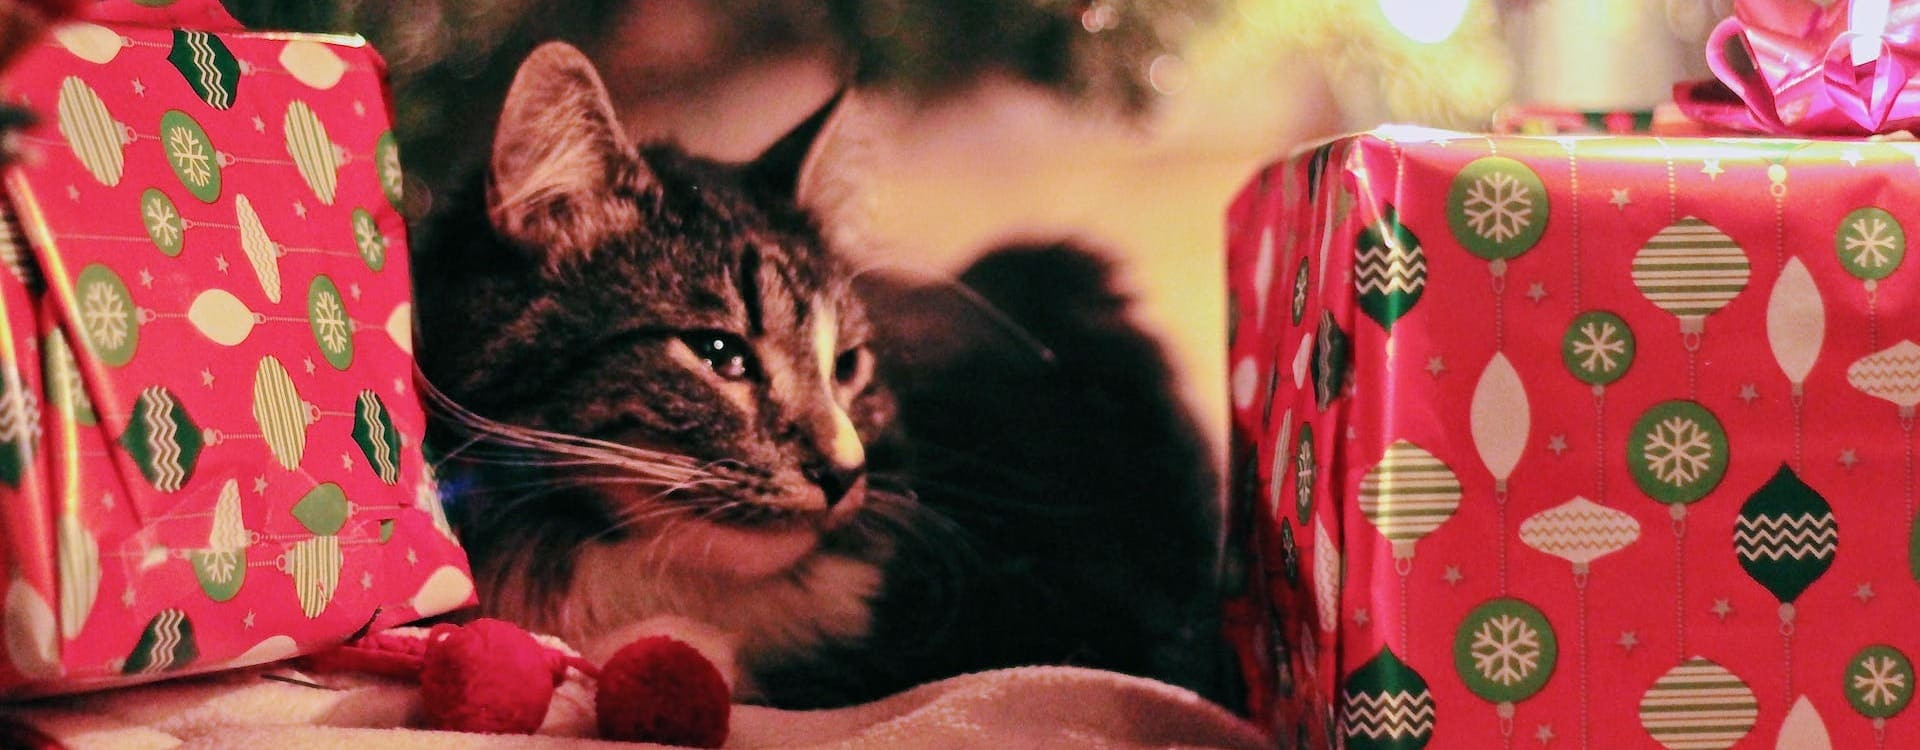 Chiens et chats à Noël : les risques à éviter